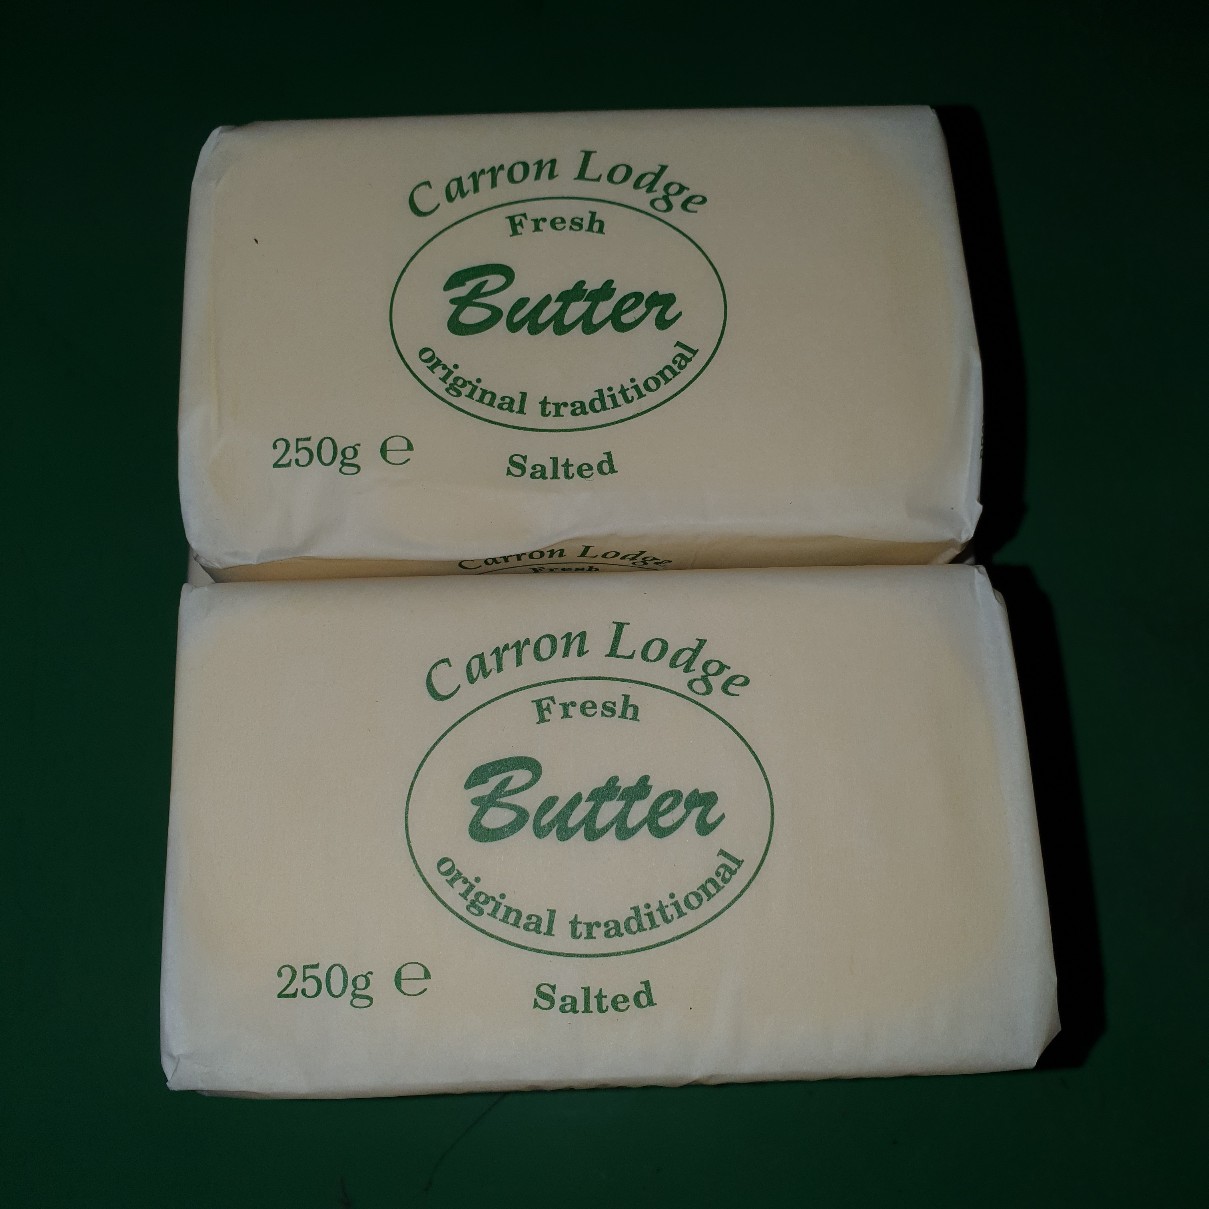 Fresh Butter Salted 250g - £ 2.40  per each